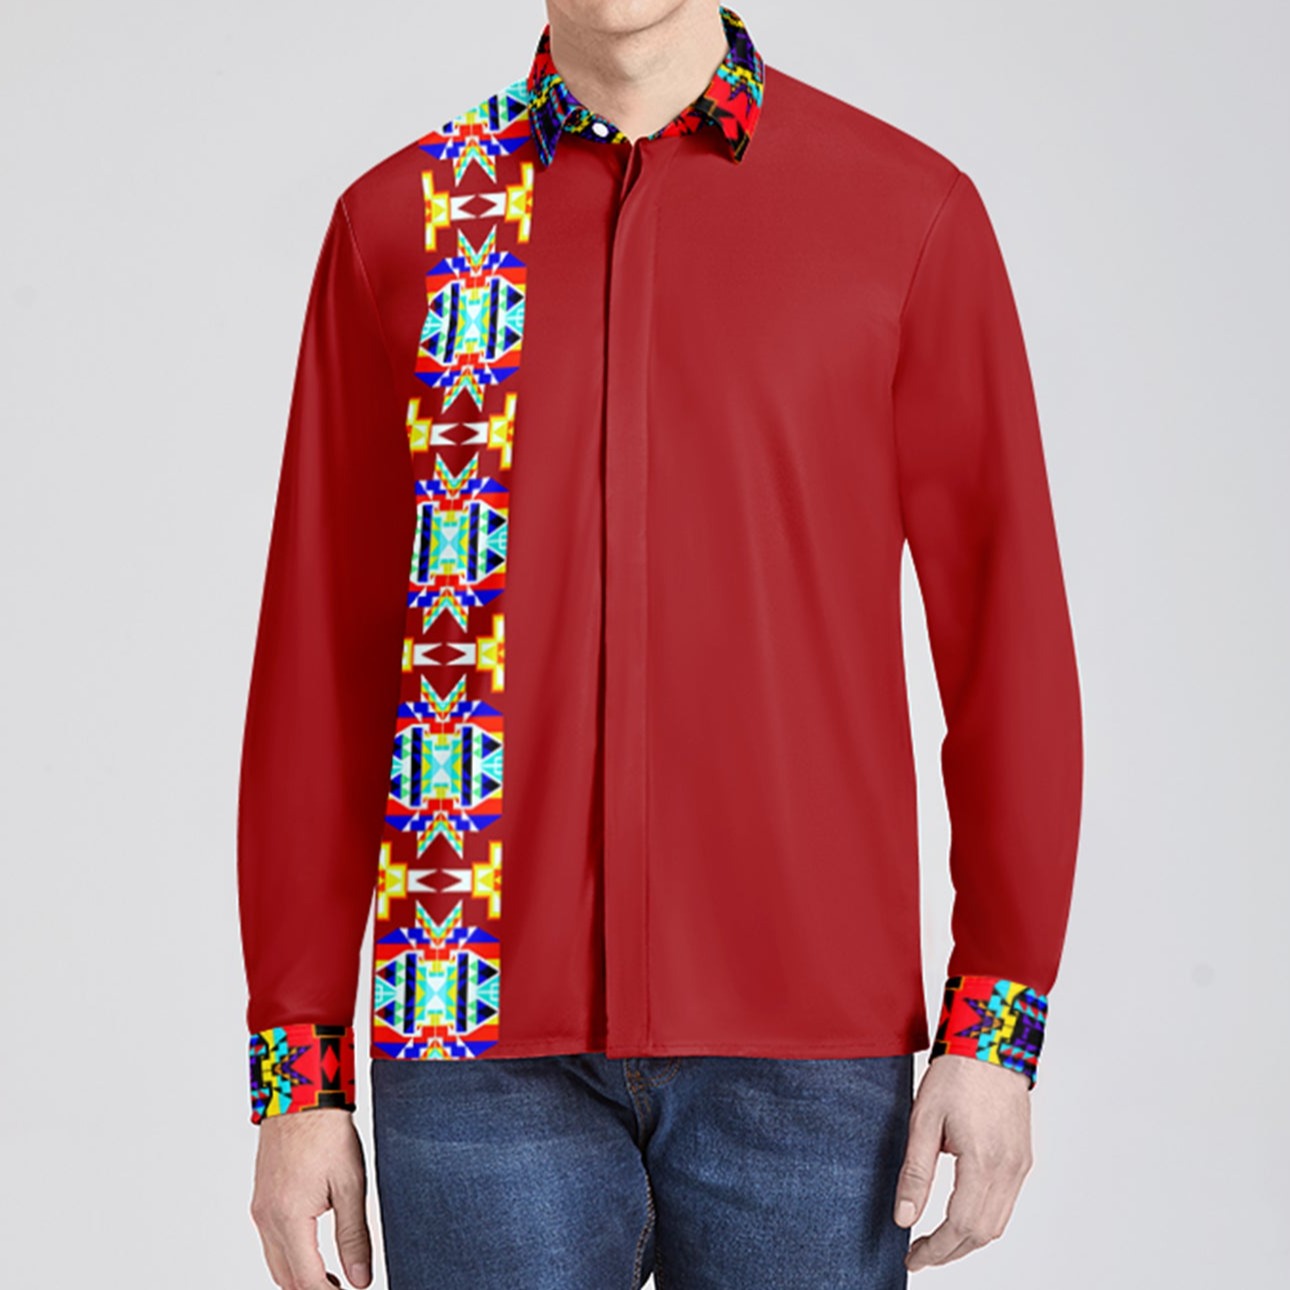 Stripe Blanket Crimson Men's Long Sleeve Dress Shirt